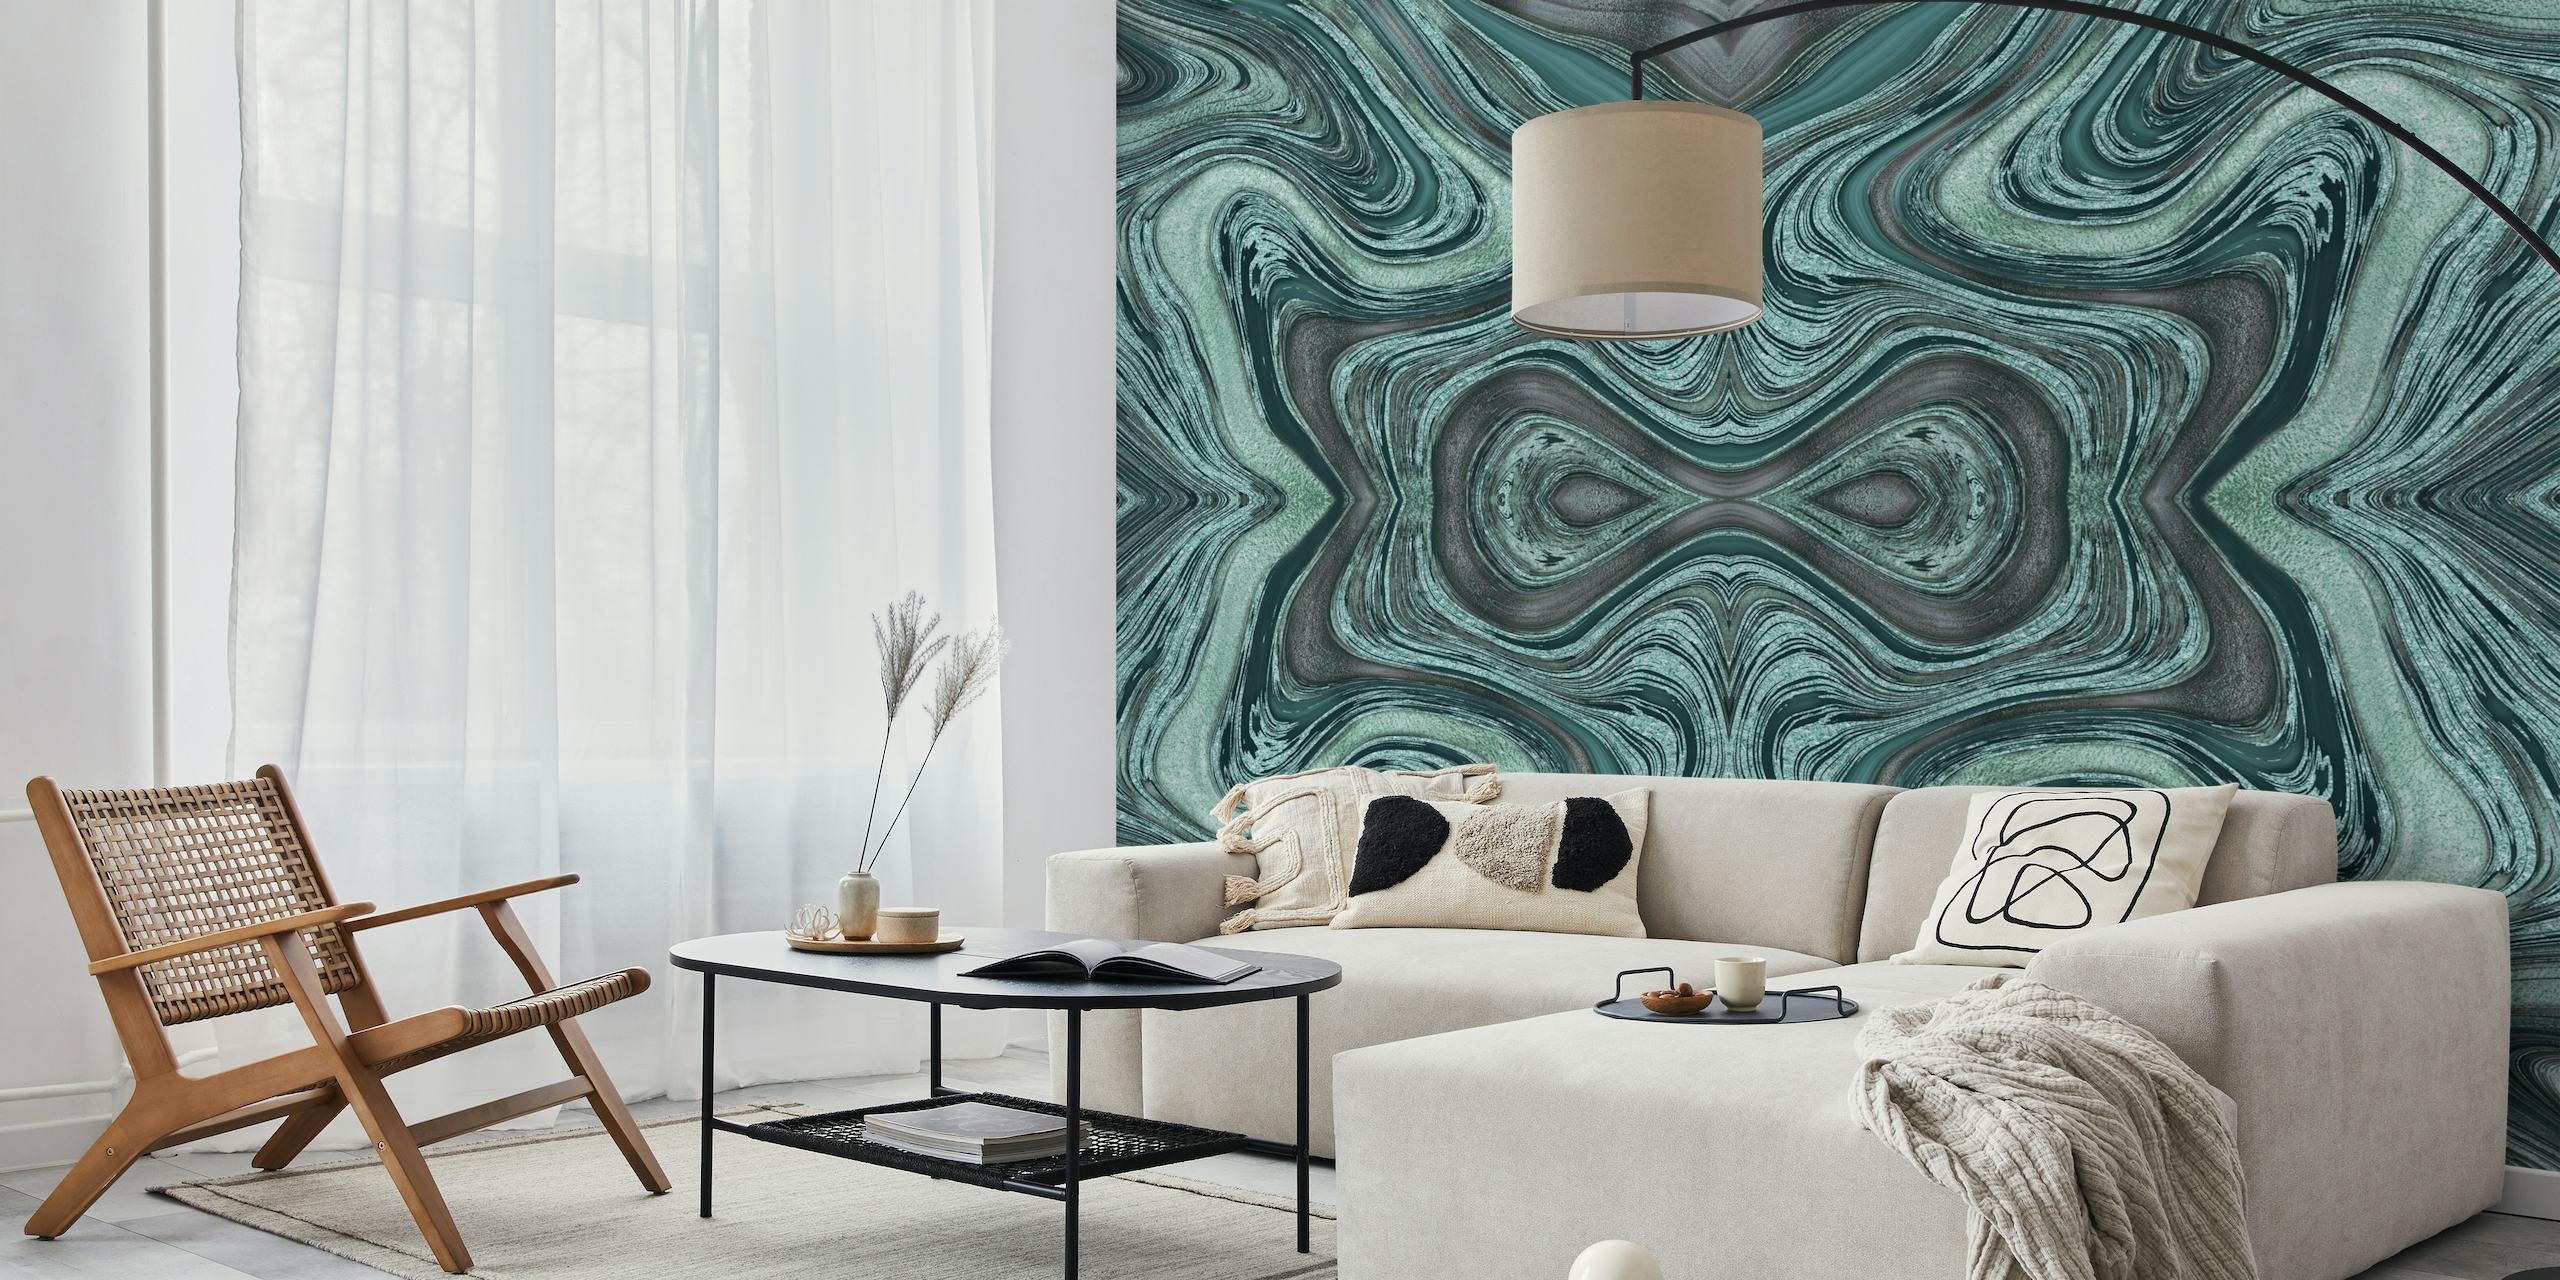 Fototapeta Abstract Glamour River Turquoise s uklidňujícími vlnitými vzory v odstínech tyrkysové, šedé a bílé.